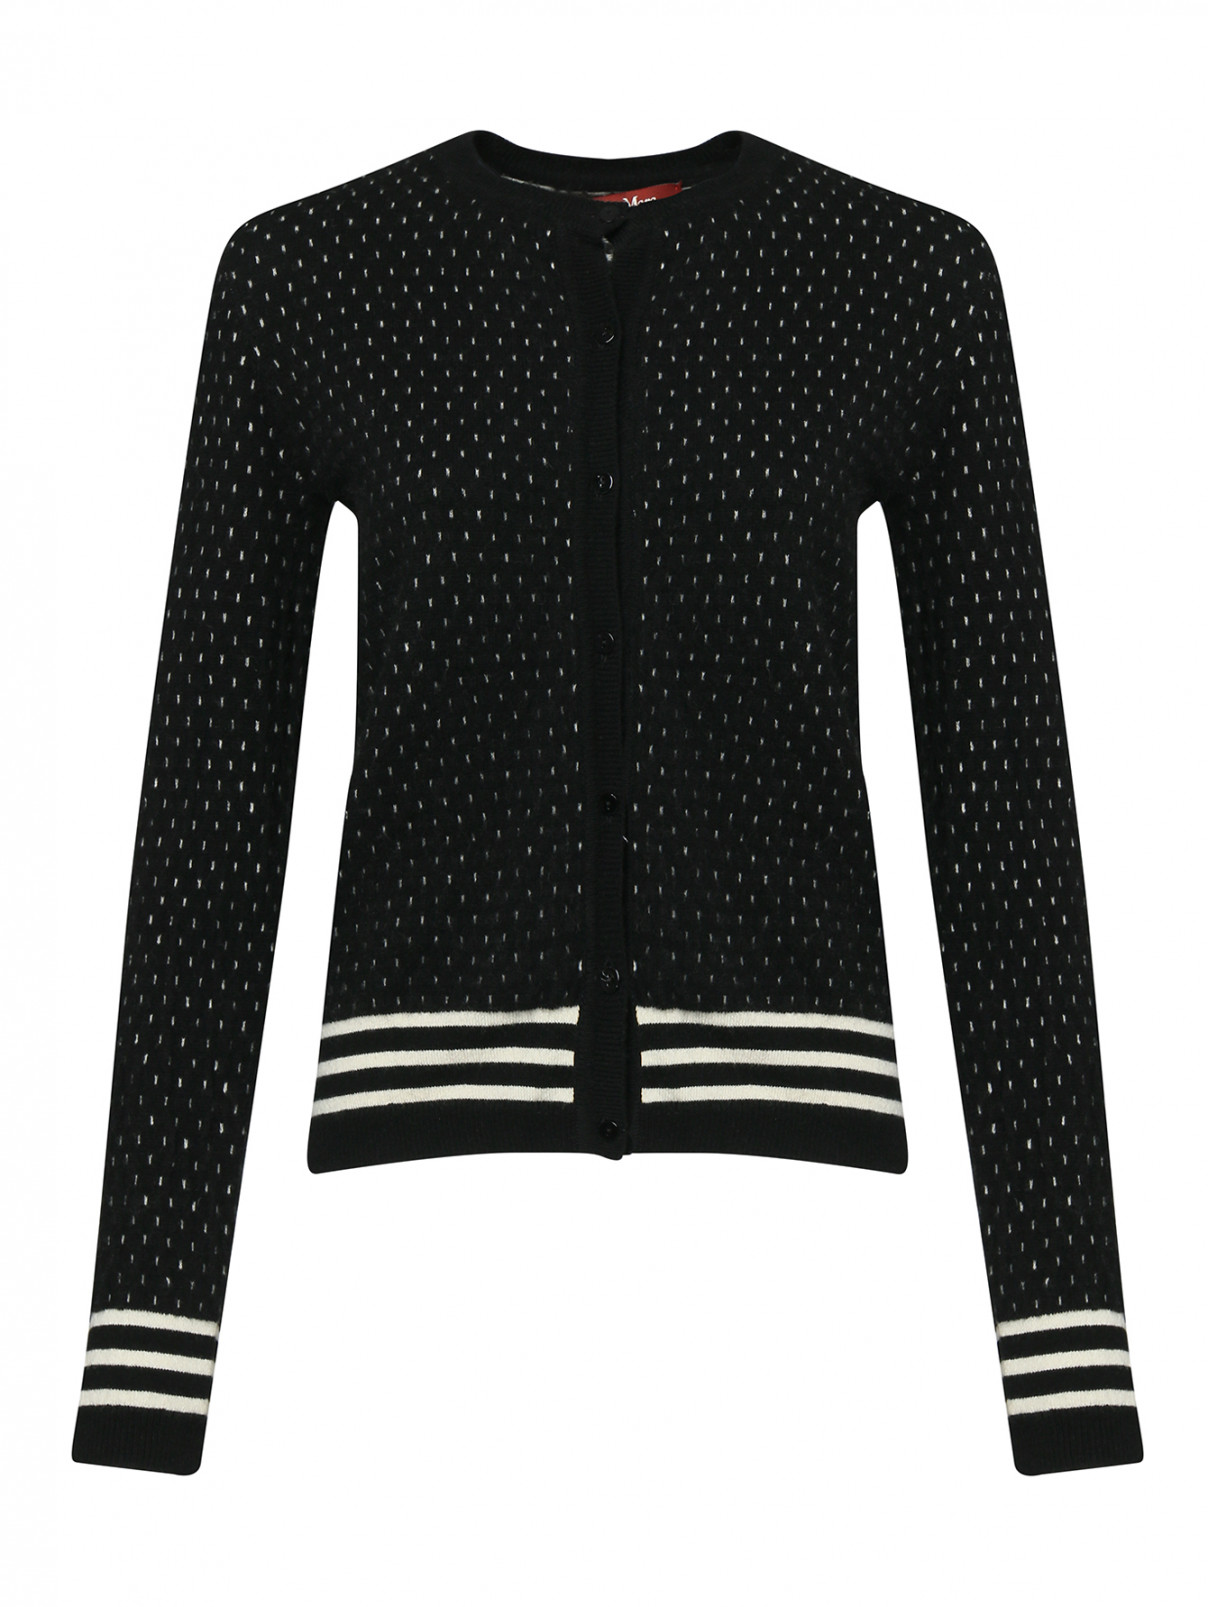 Комплект кардиган и блуза из шерсти Max Mara  –  Общий вид  – Цвет:  Черный